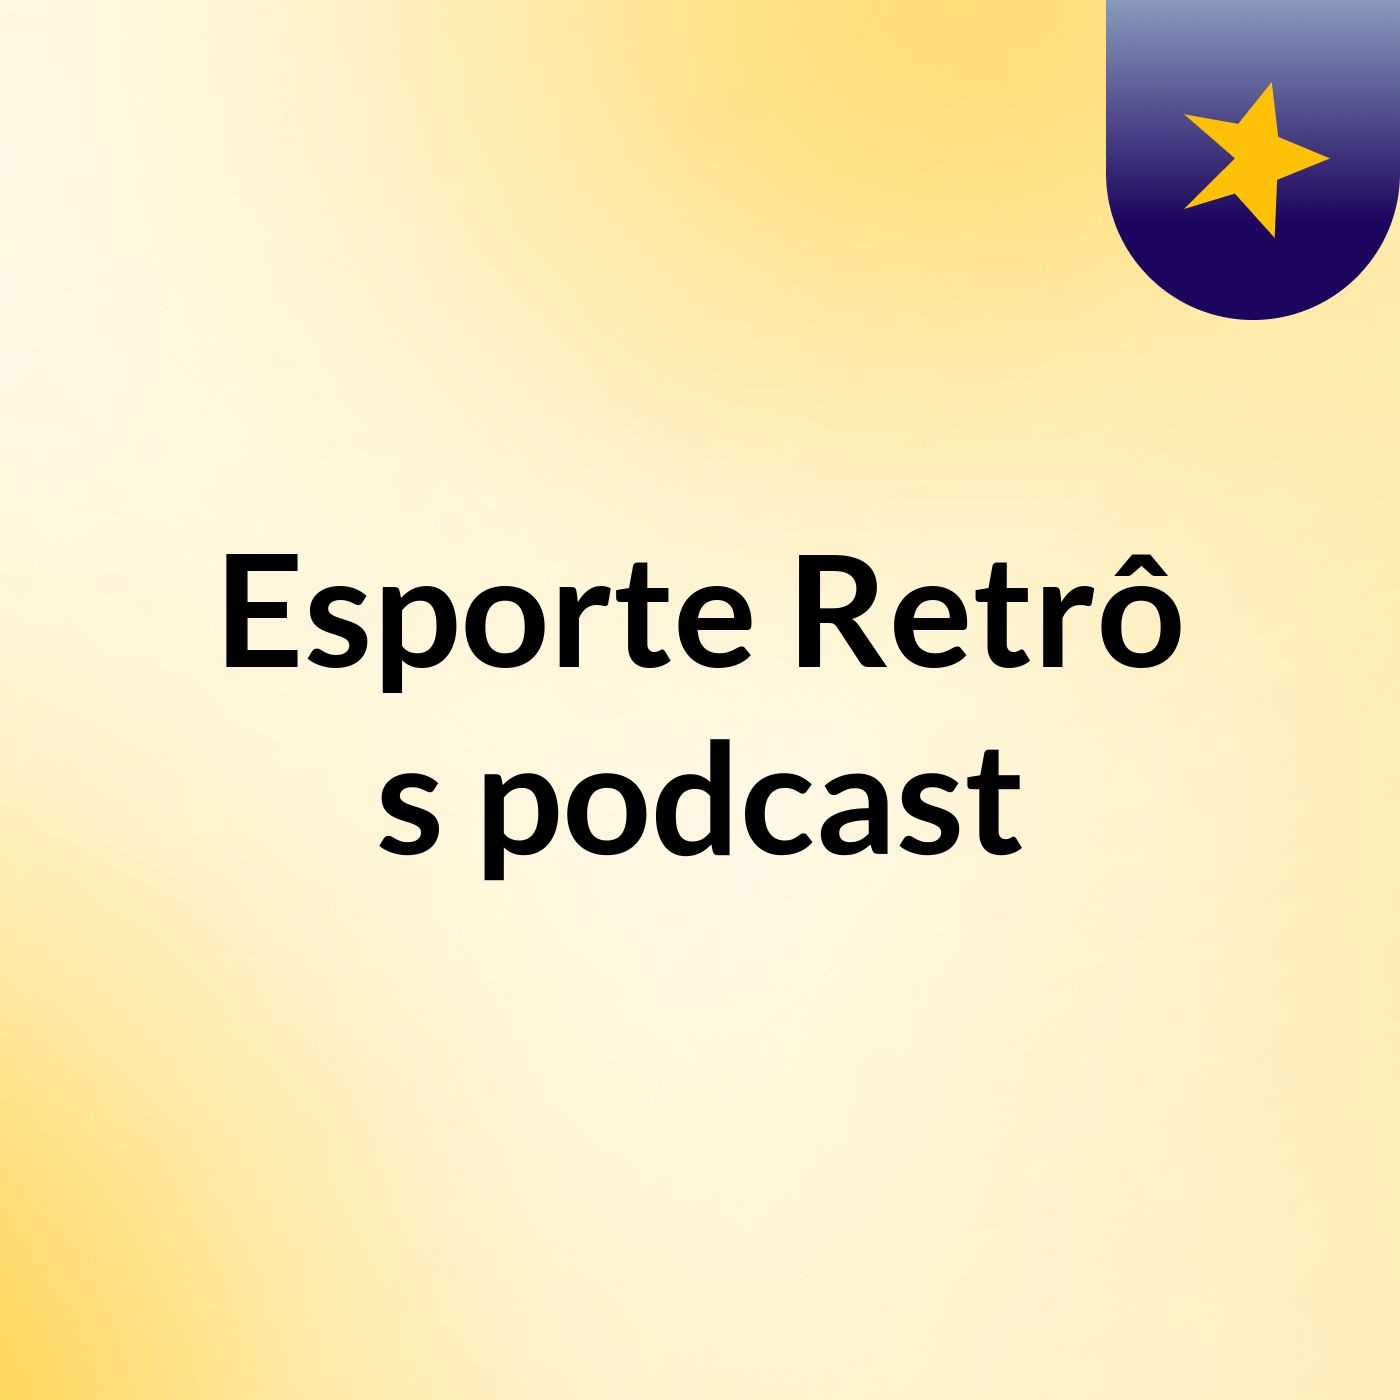 Esporte Retrô's podcast